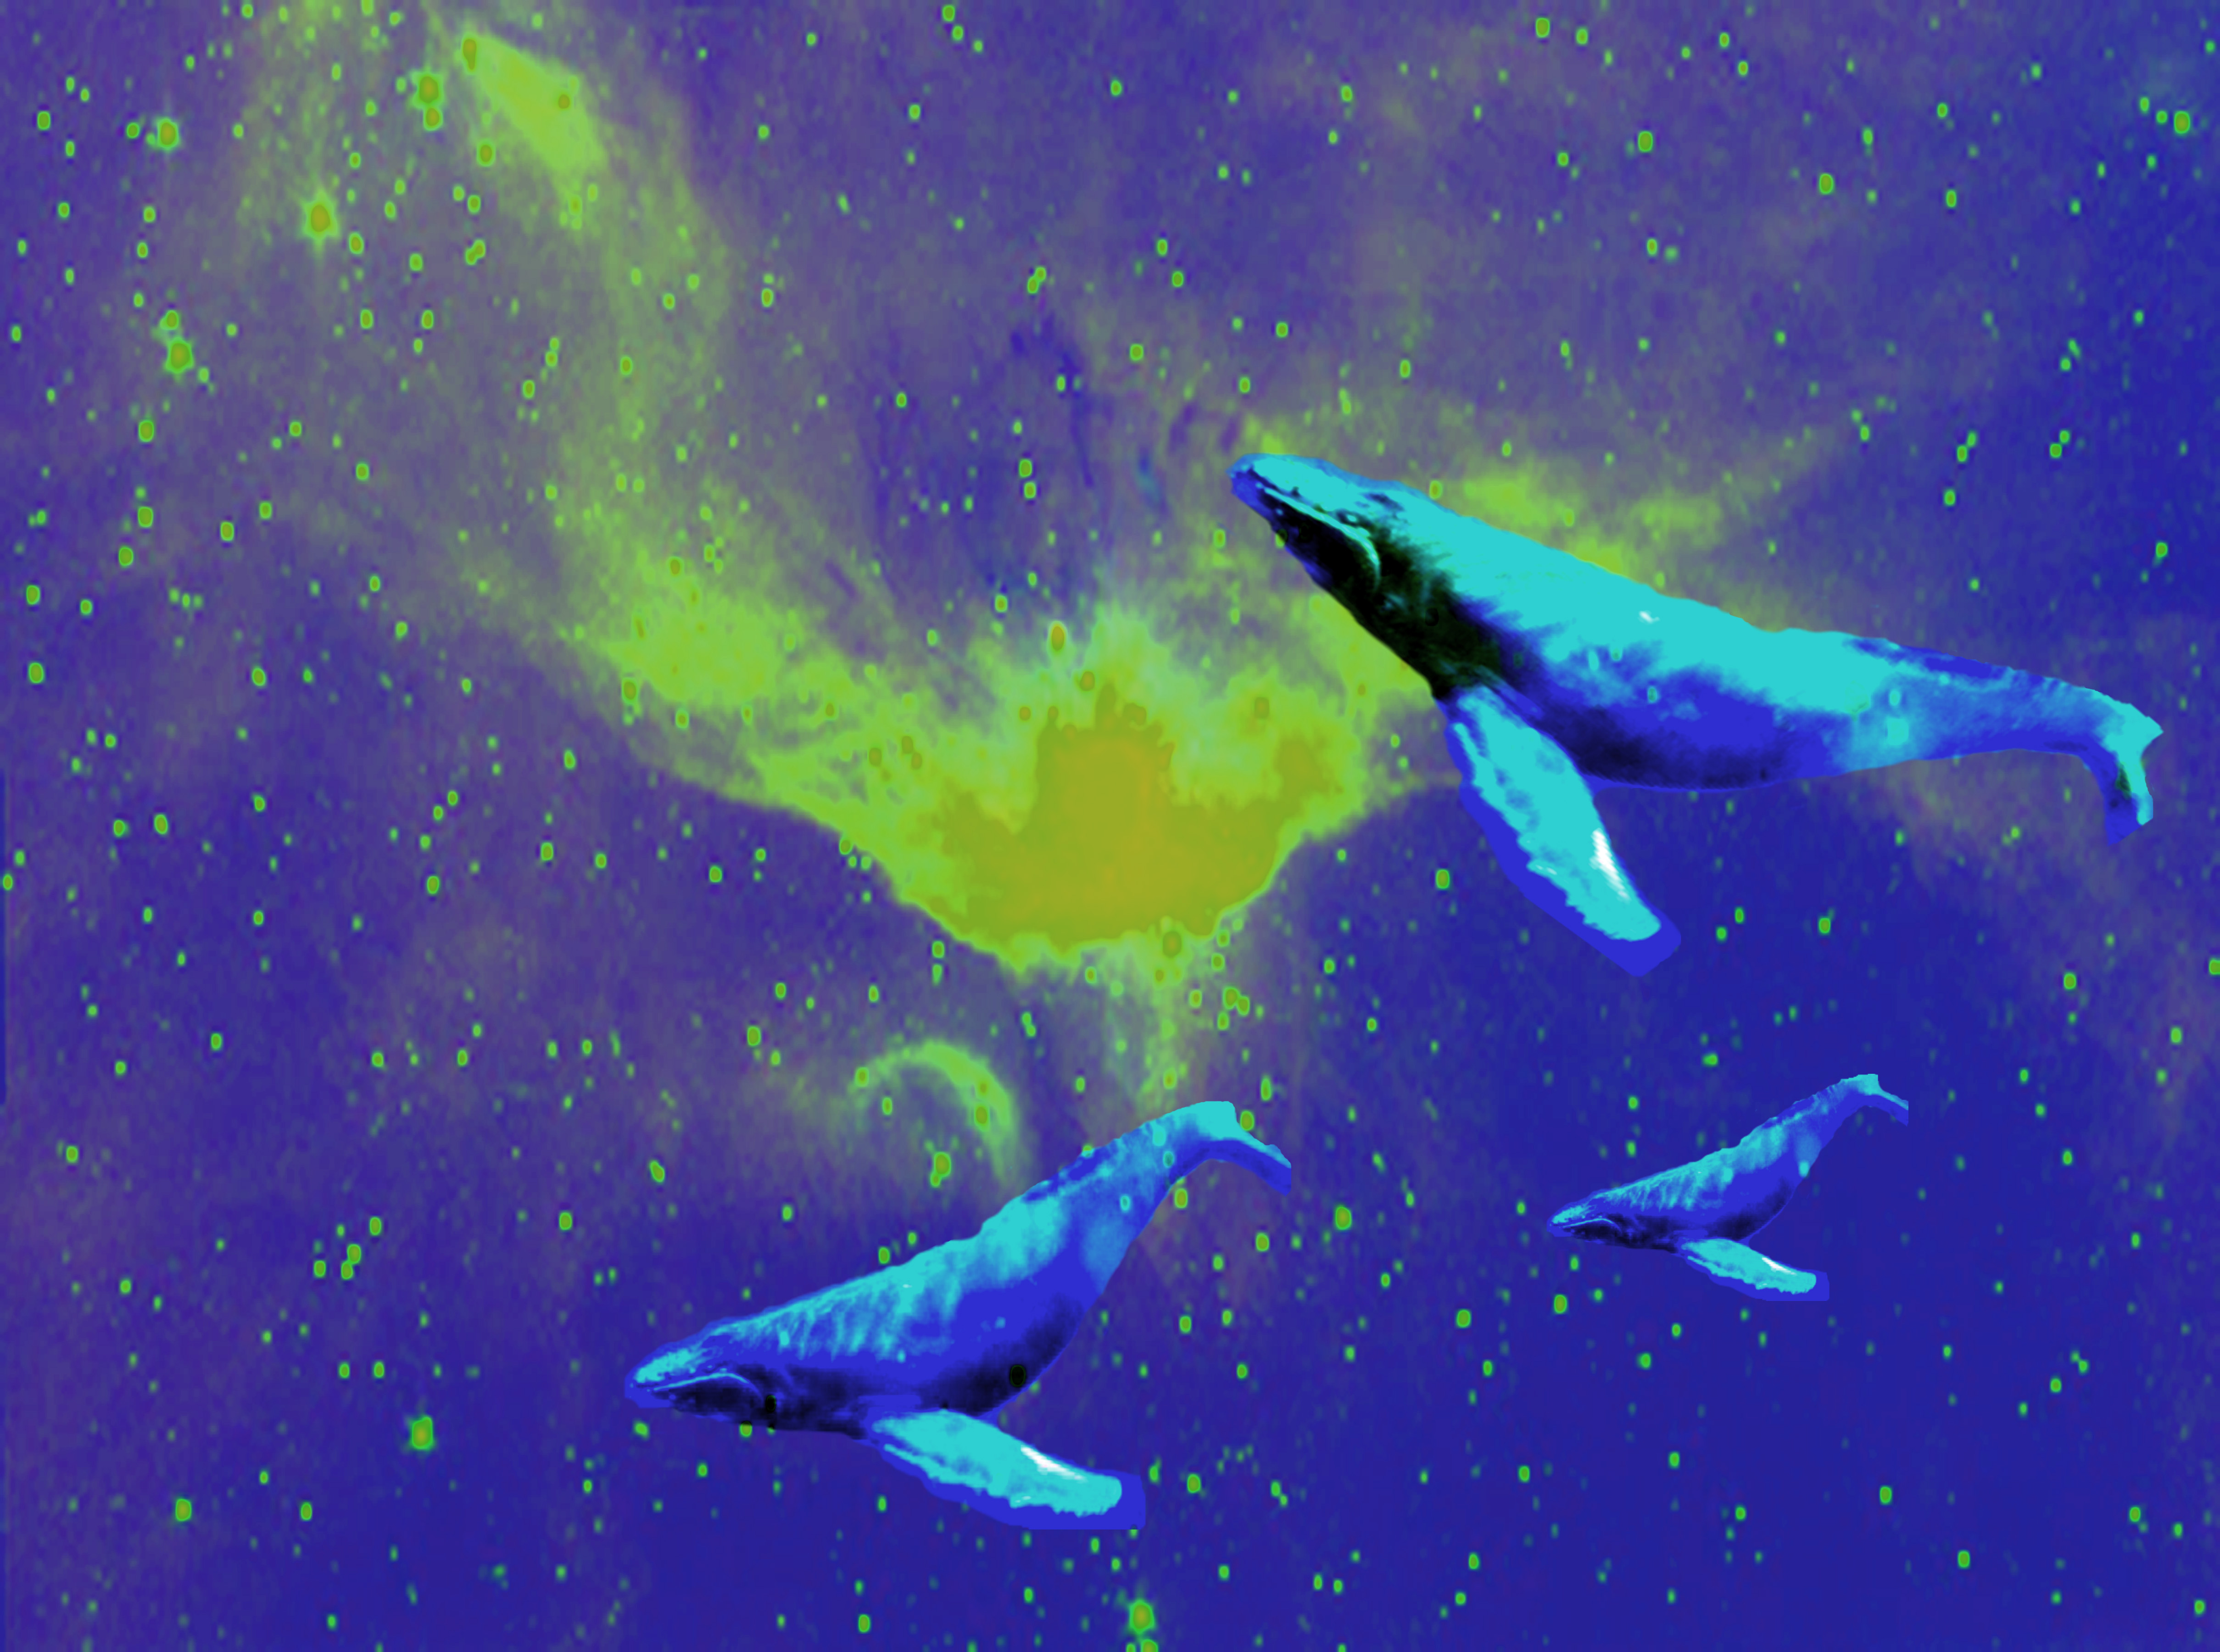 spacewhales3.jpg